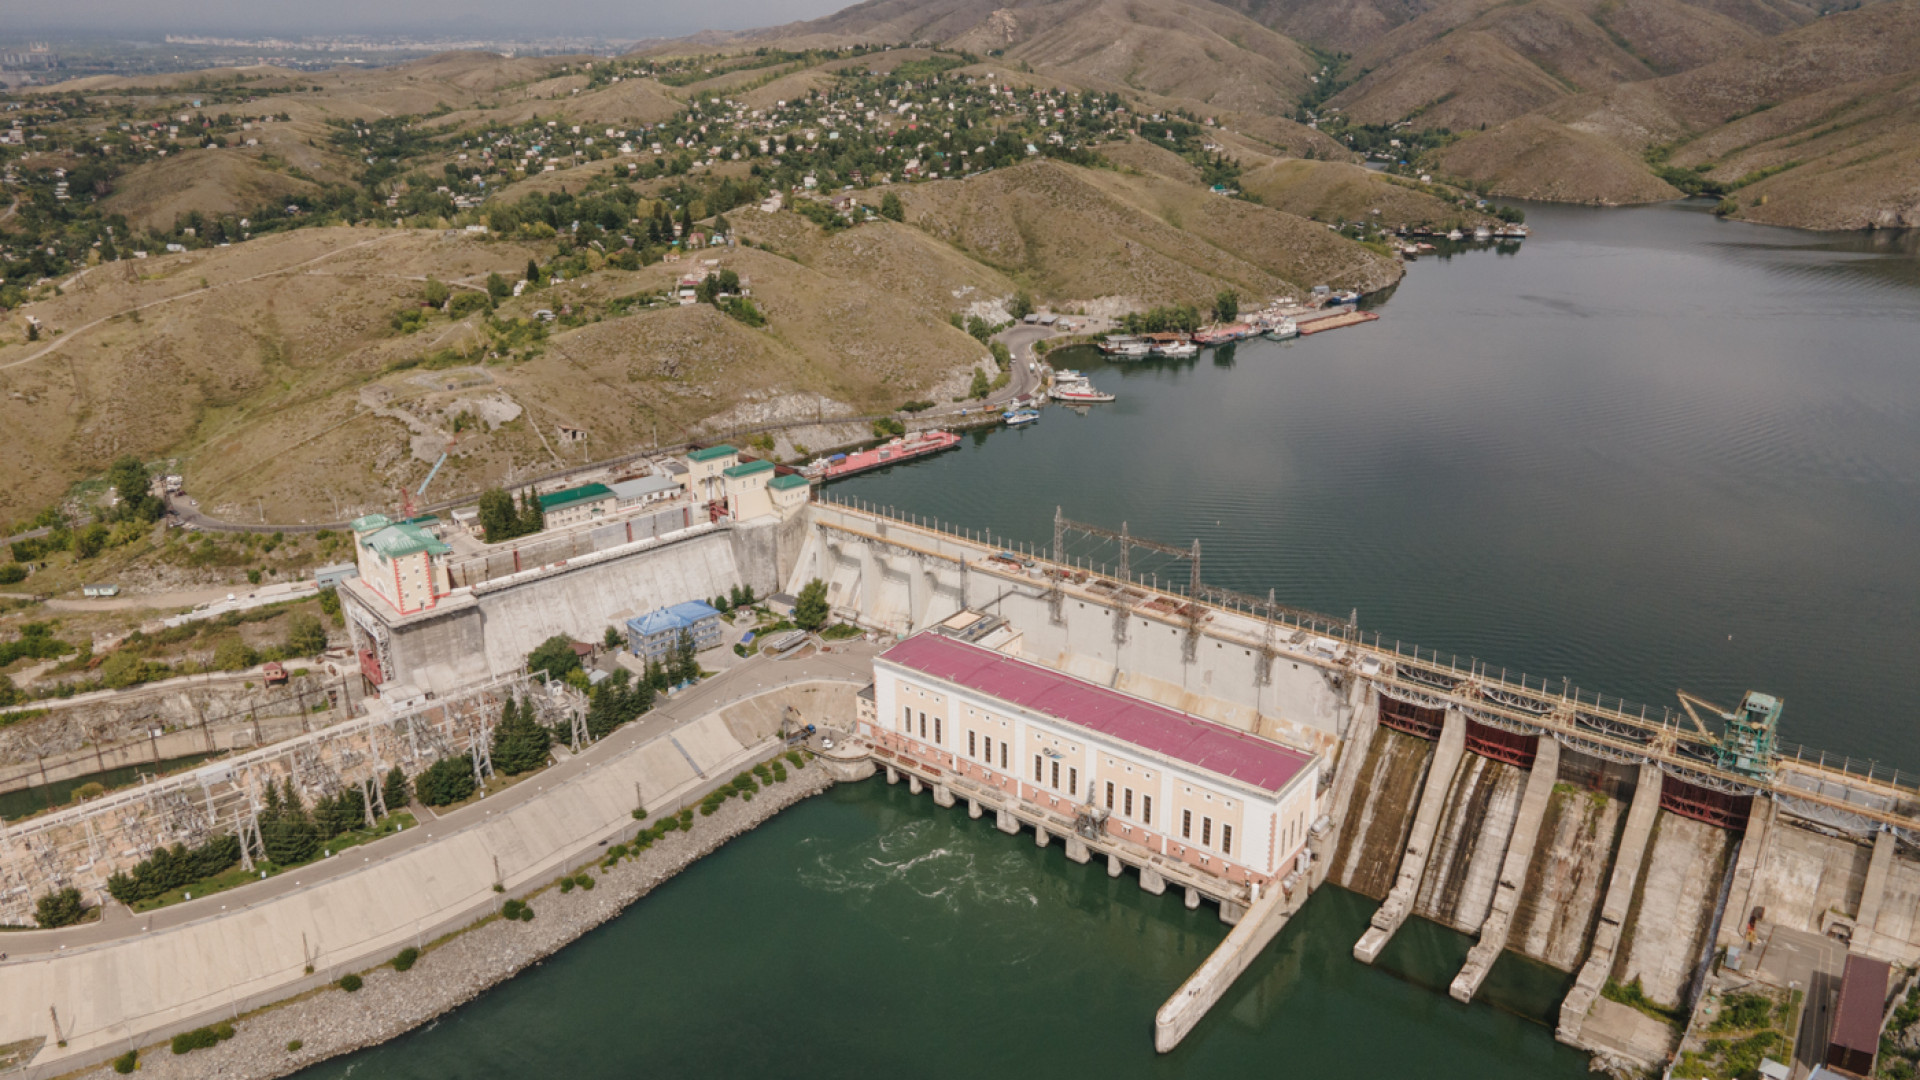 ЕАБР и Казахстан будут совместно привлекать инвестиции в области водных ресурсов